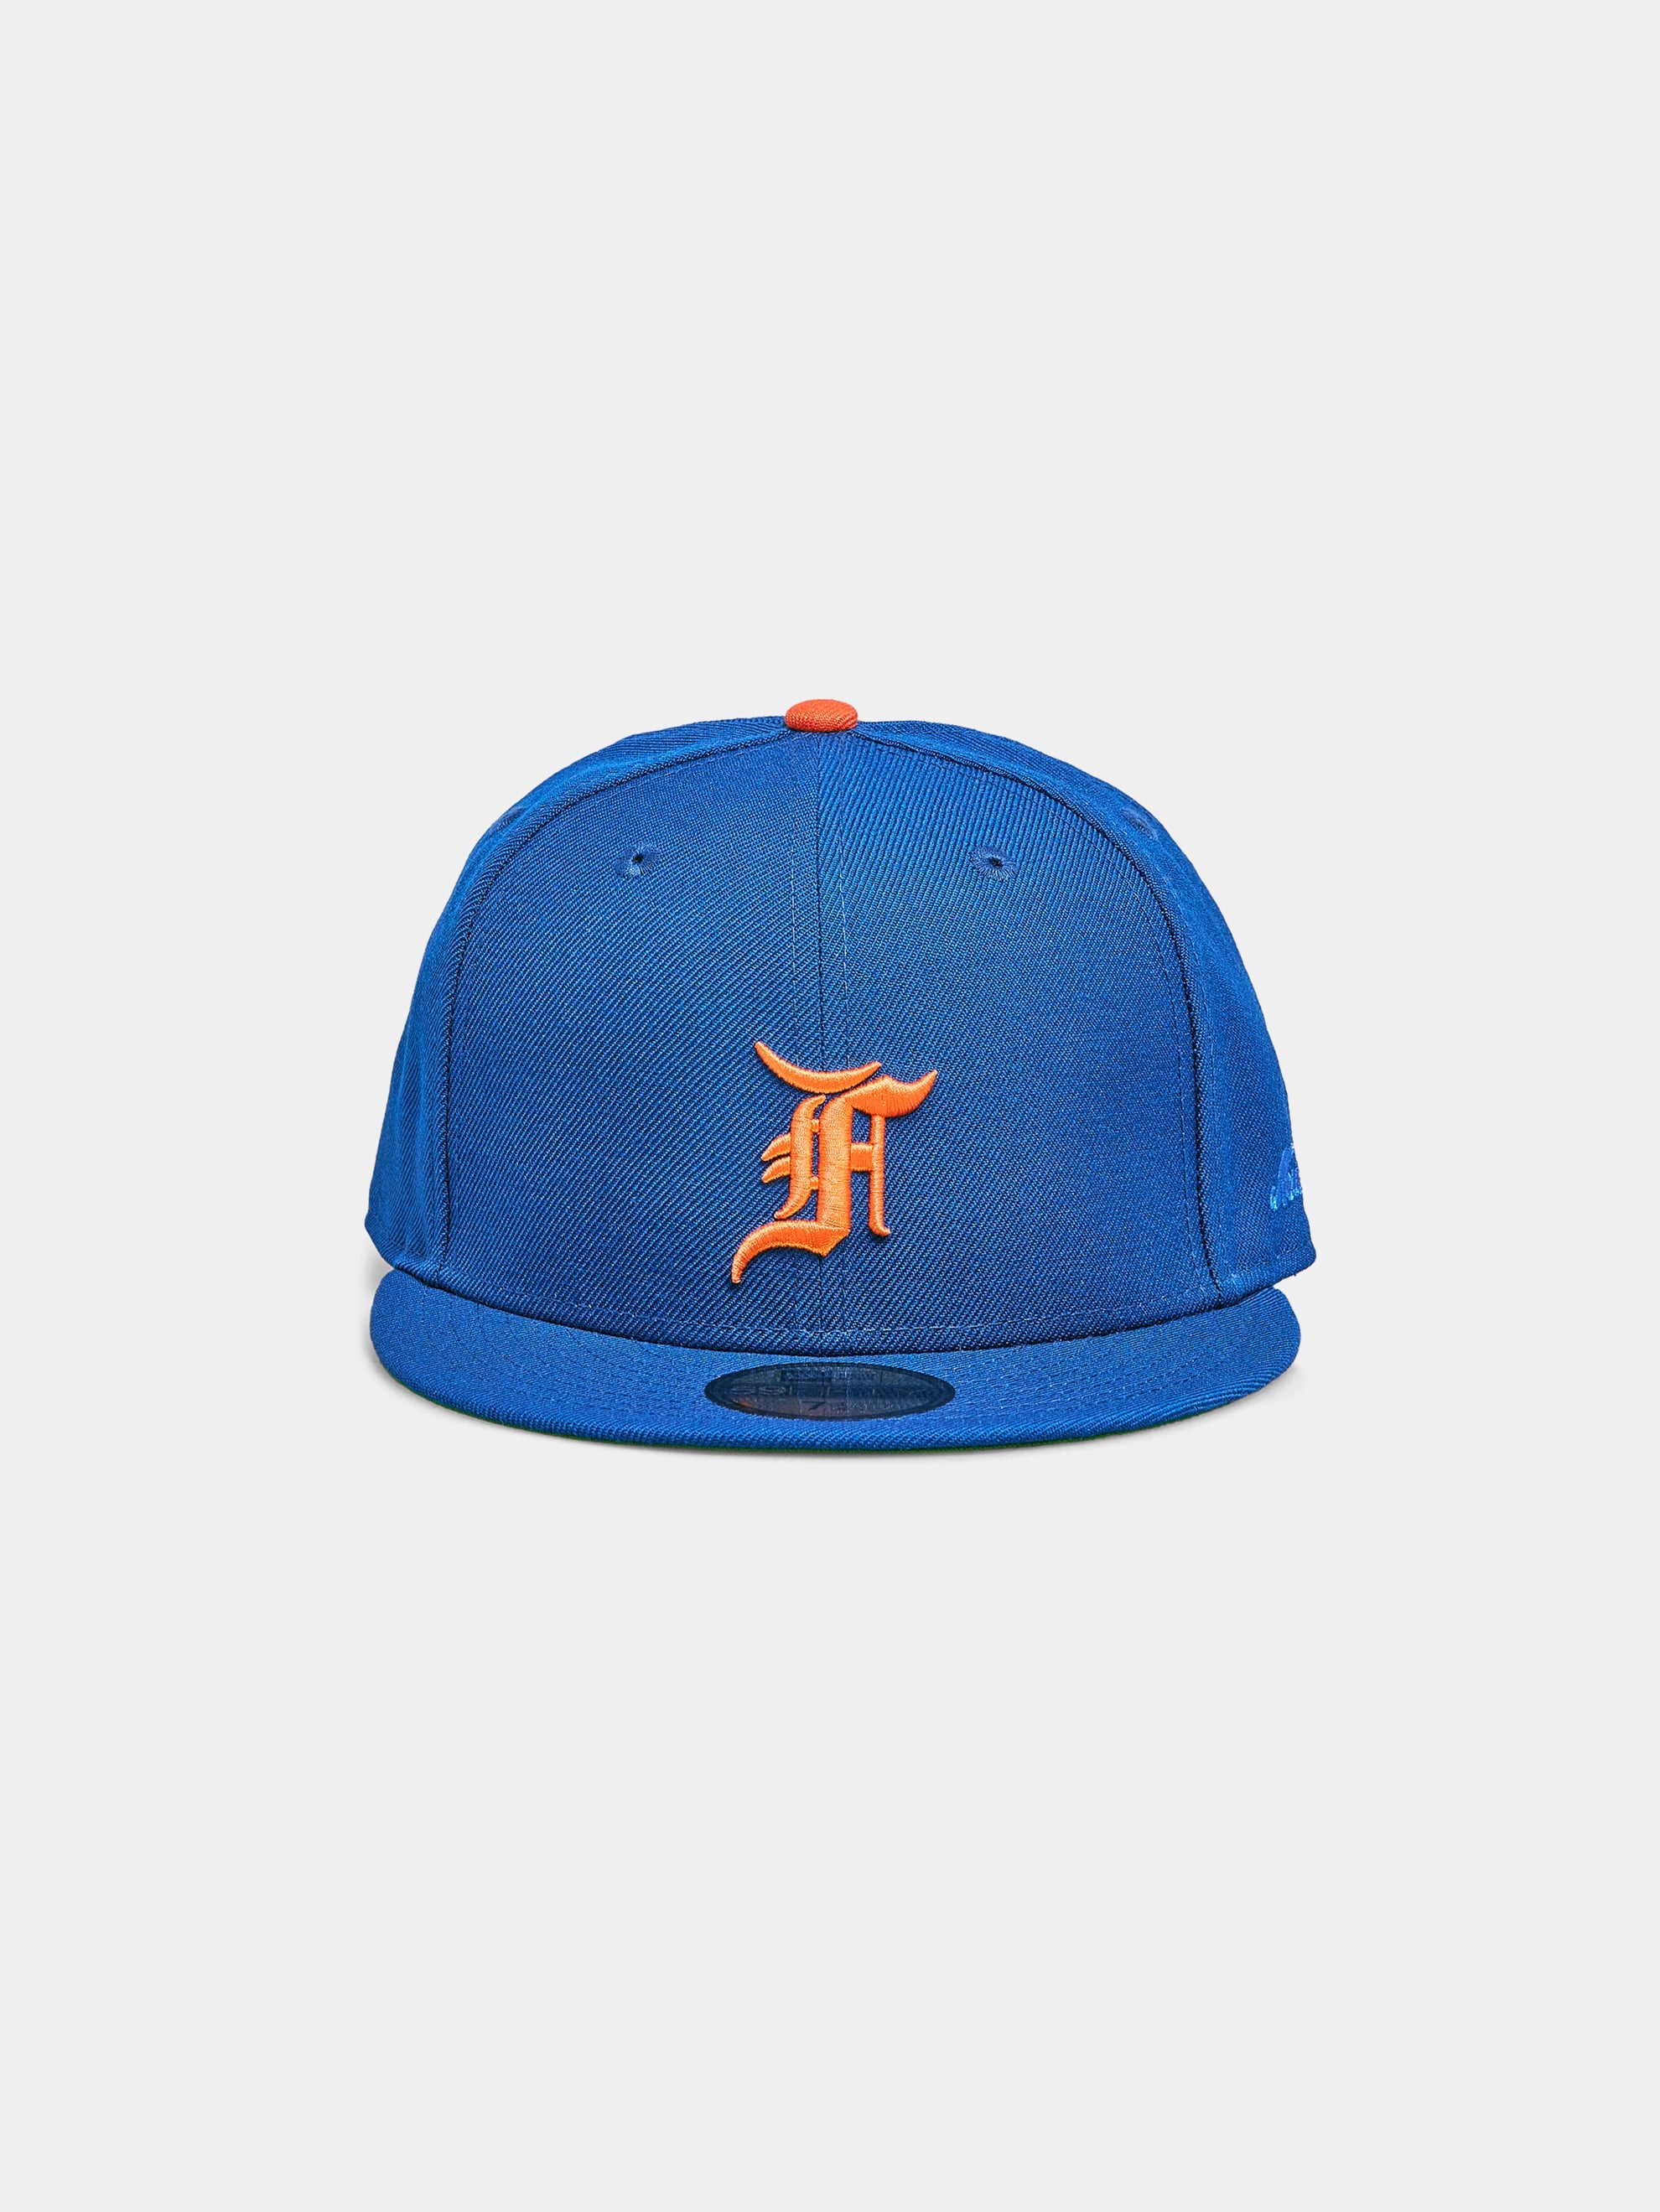 FOG Mets "Crown Fronts" Cap